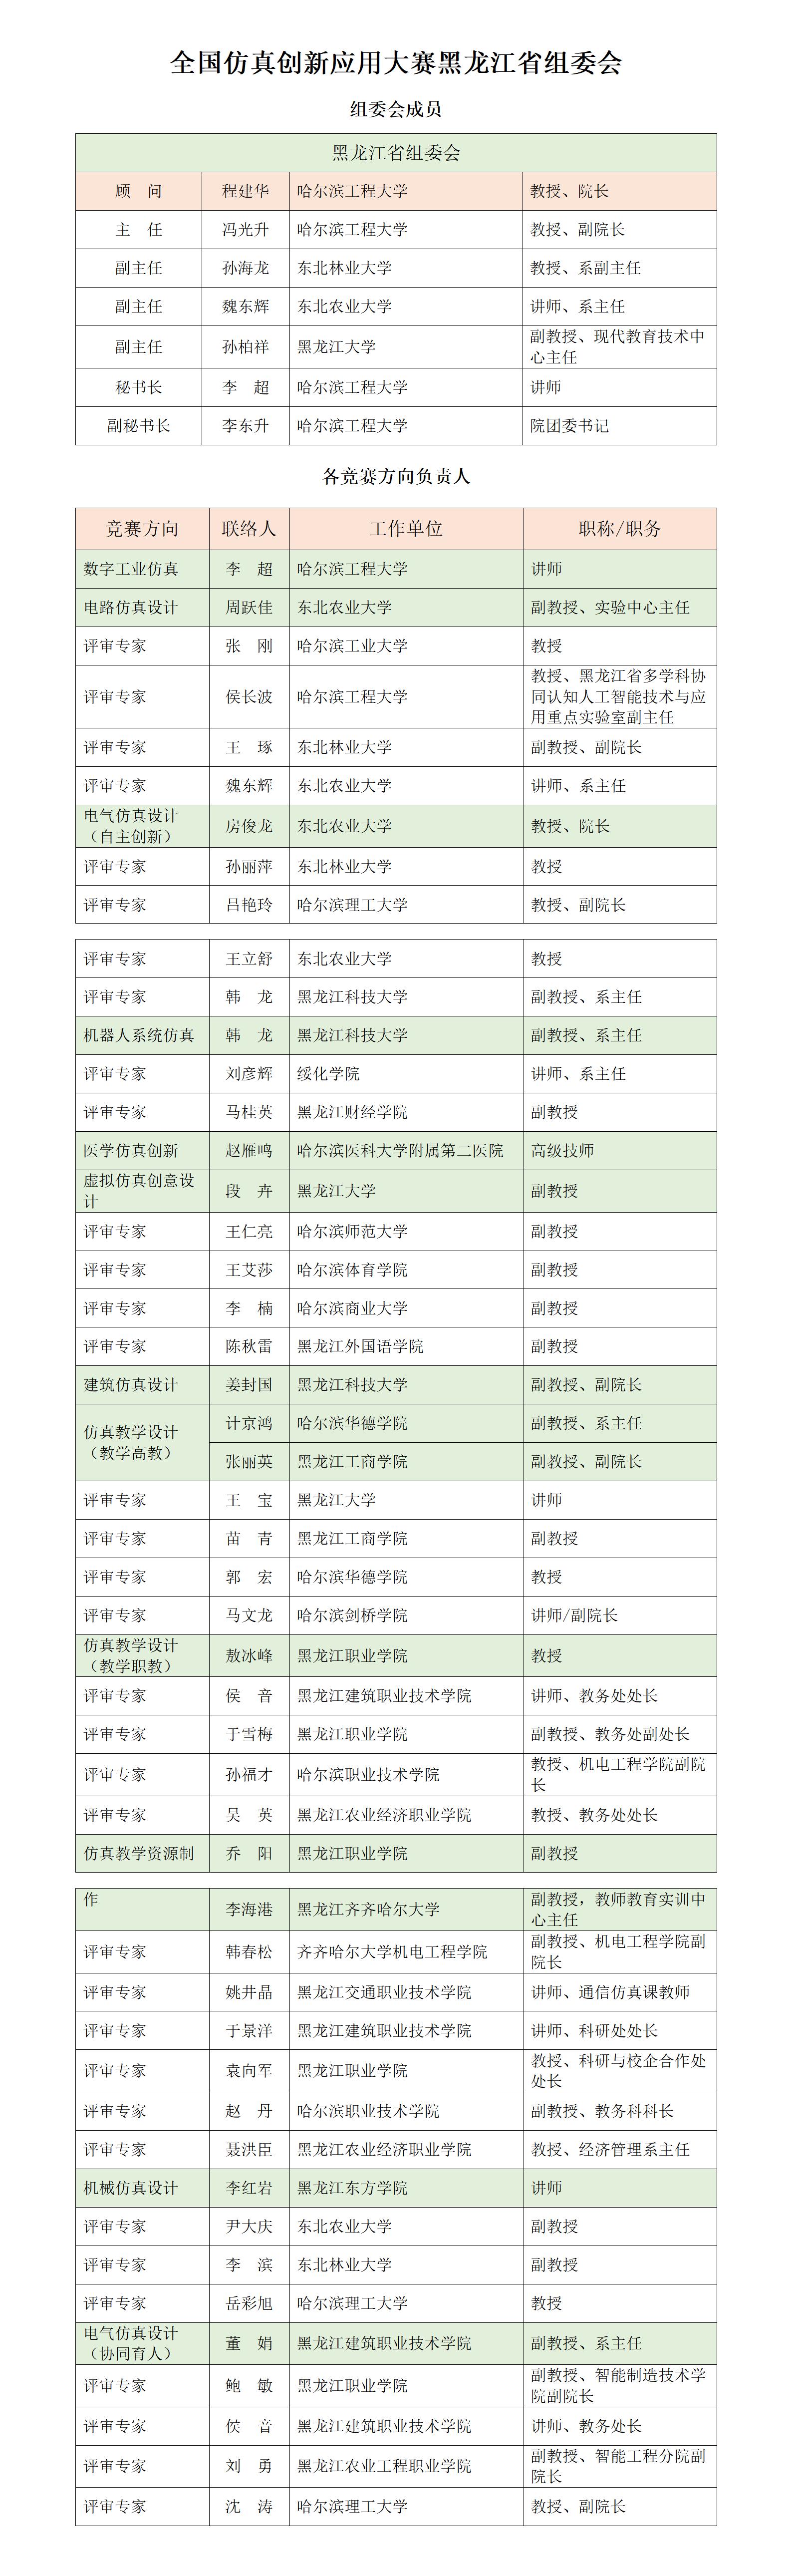 黑龙江赛区组委会及专家名录对外公布版_01.jpg